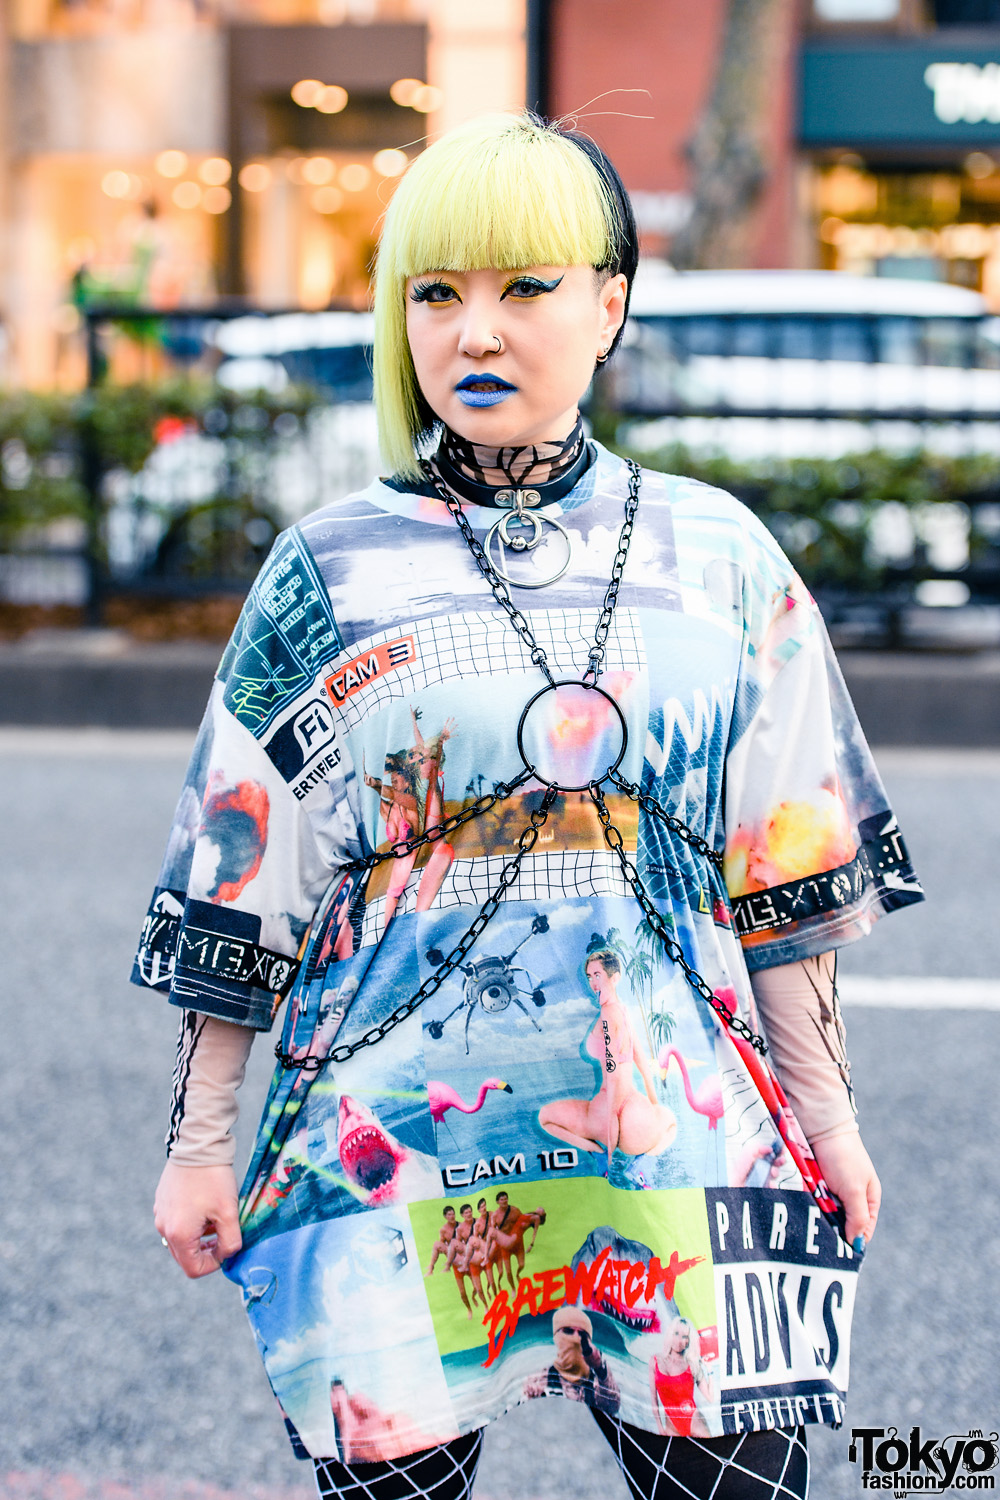 Tokyo Street Style w/ Bleached Hair, Tattoos, Single Hoop Earring